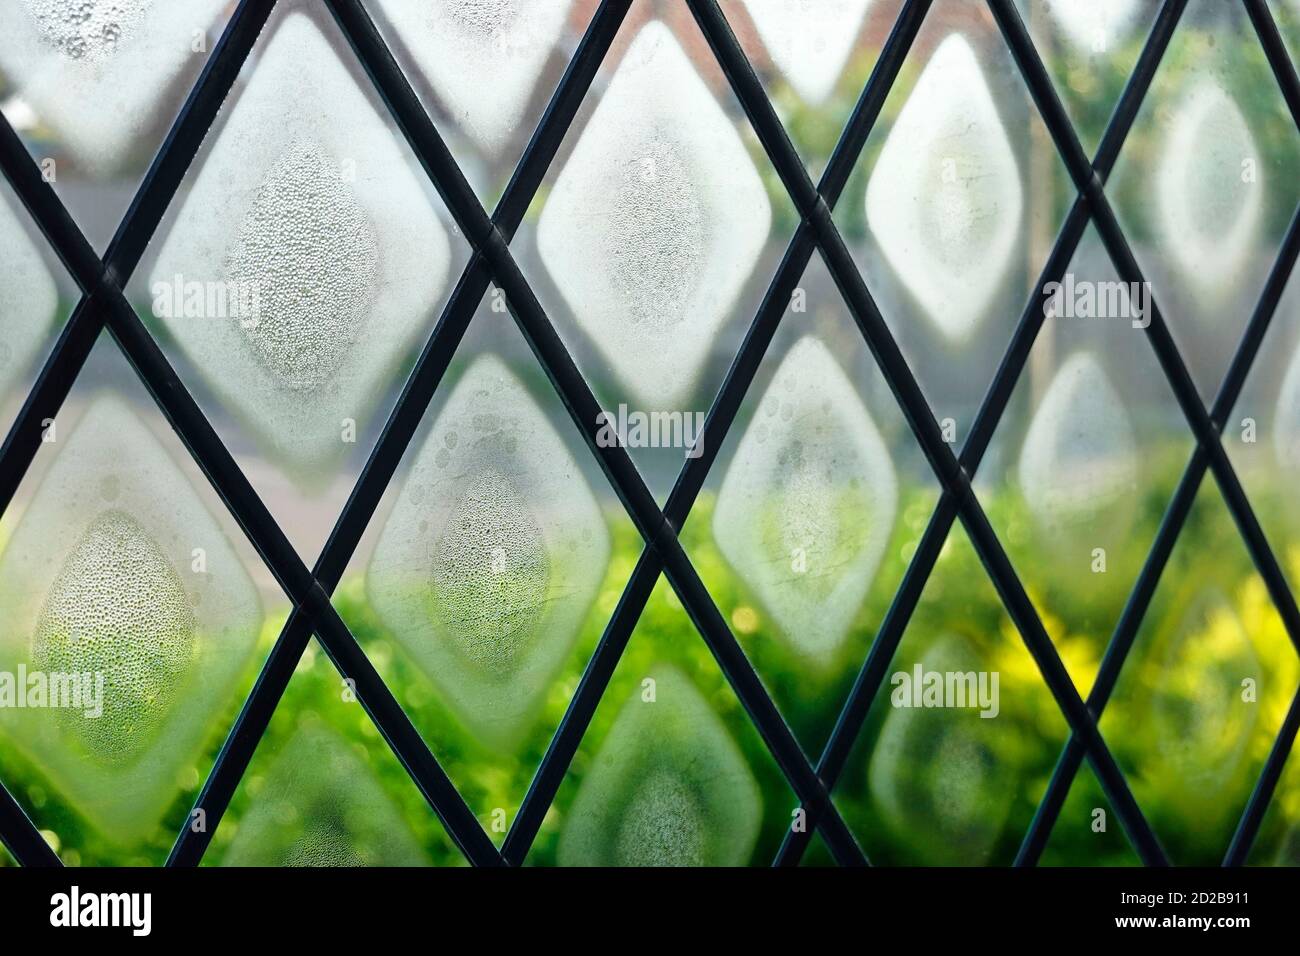 Le joint de la fenêtre à double vitrage et est défectueux et grillé le brouillard de condensation entre le verre imite la forme des lumières au plomb diamant Formes Angleterre Royaume-Uni Banque D'Images